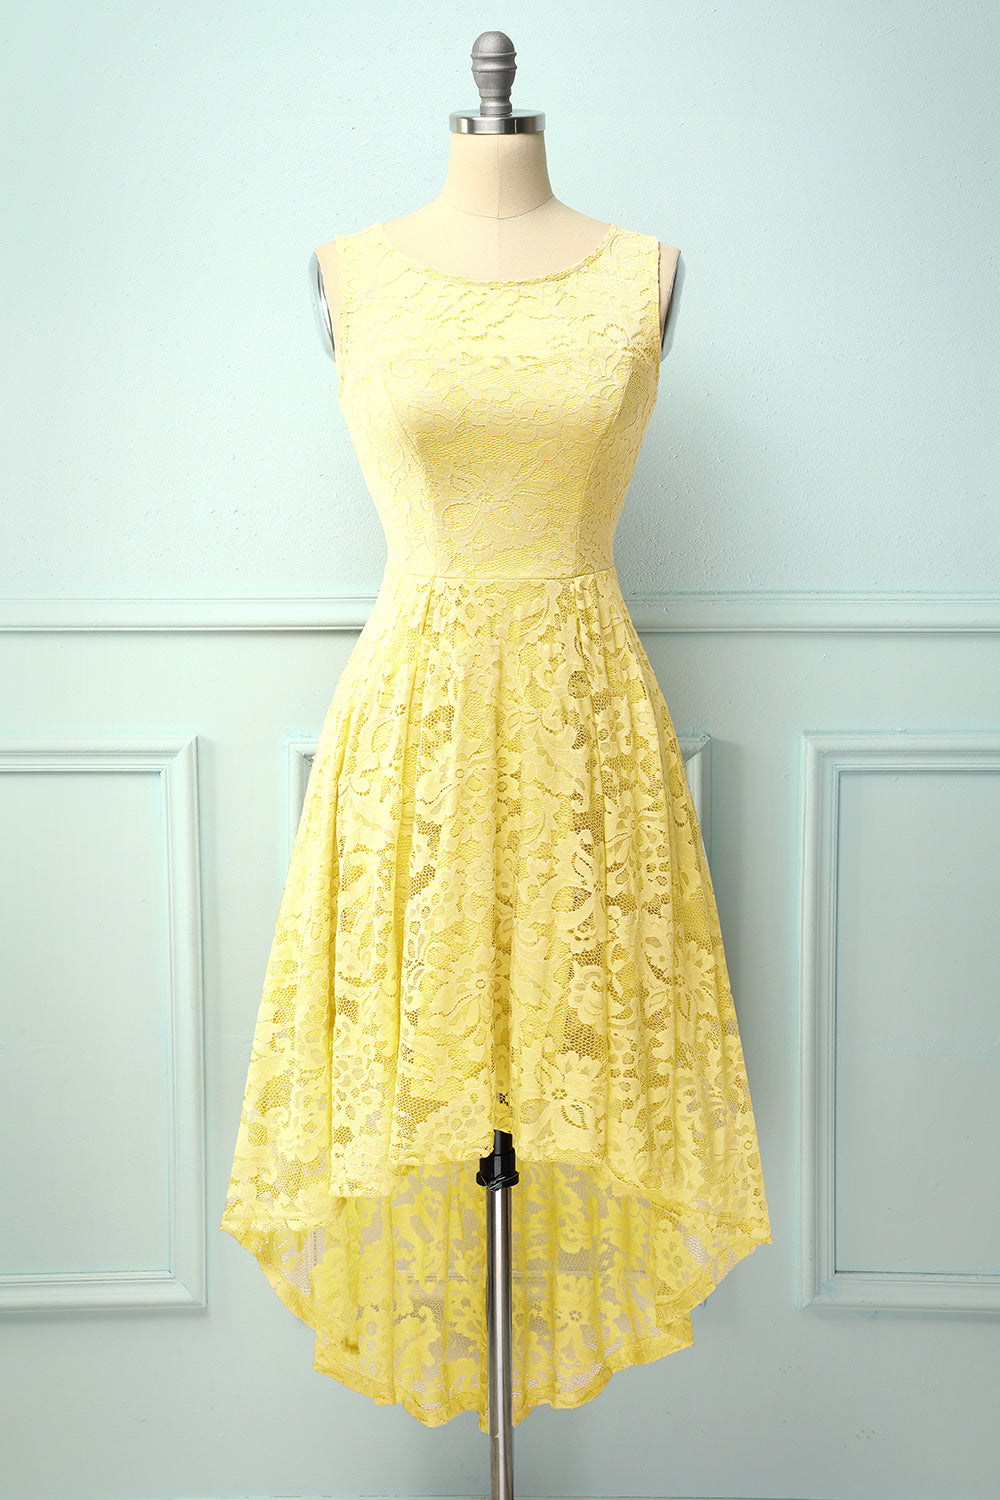 yellow asymmetrical dress